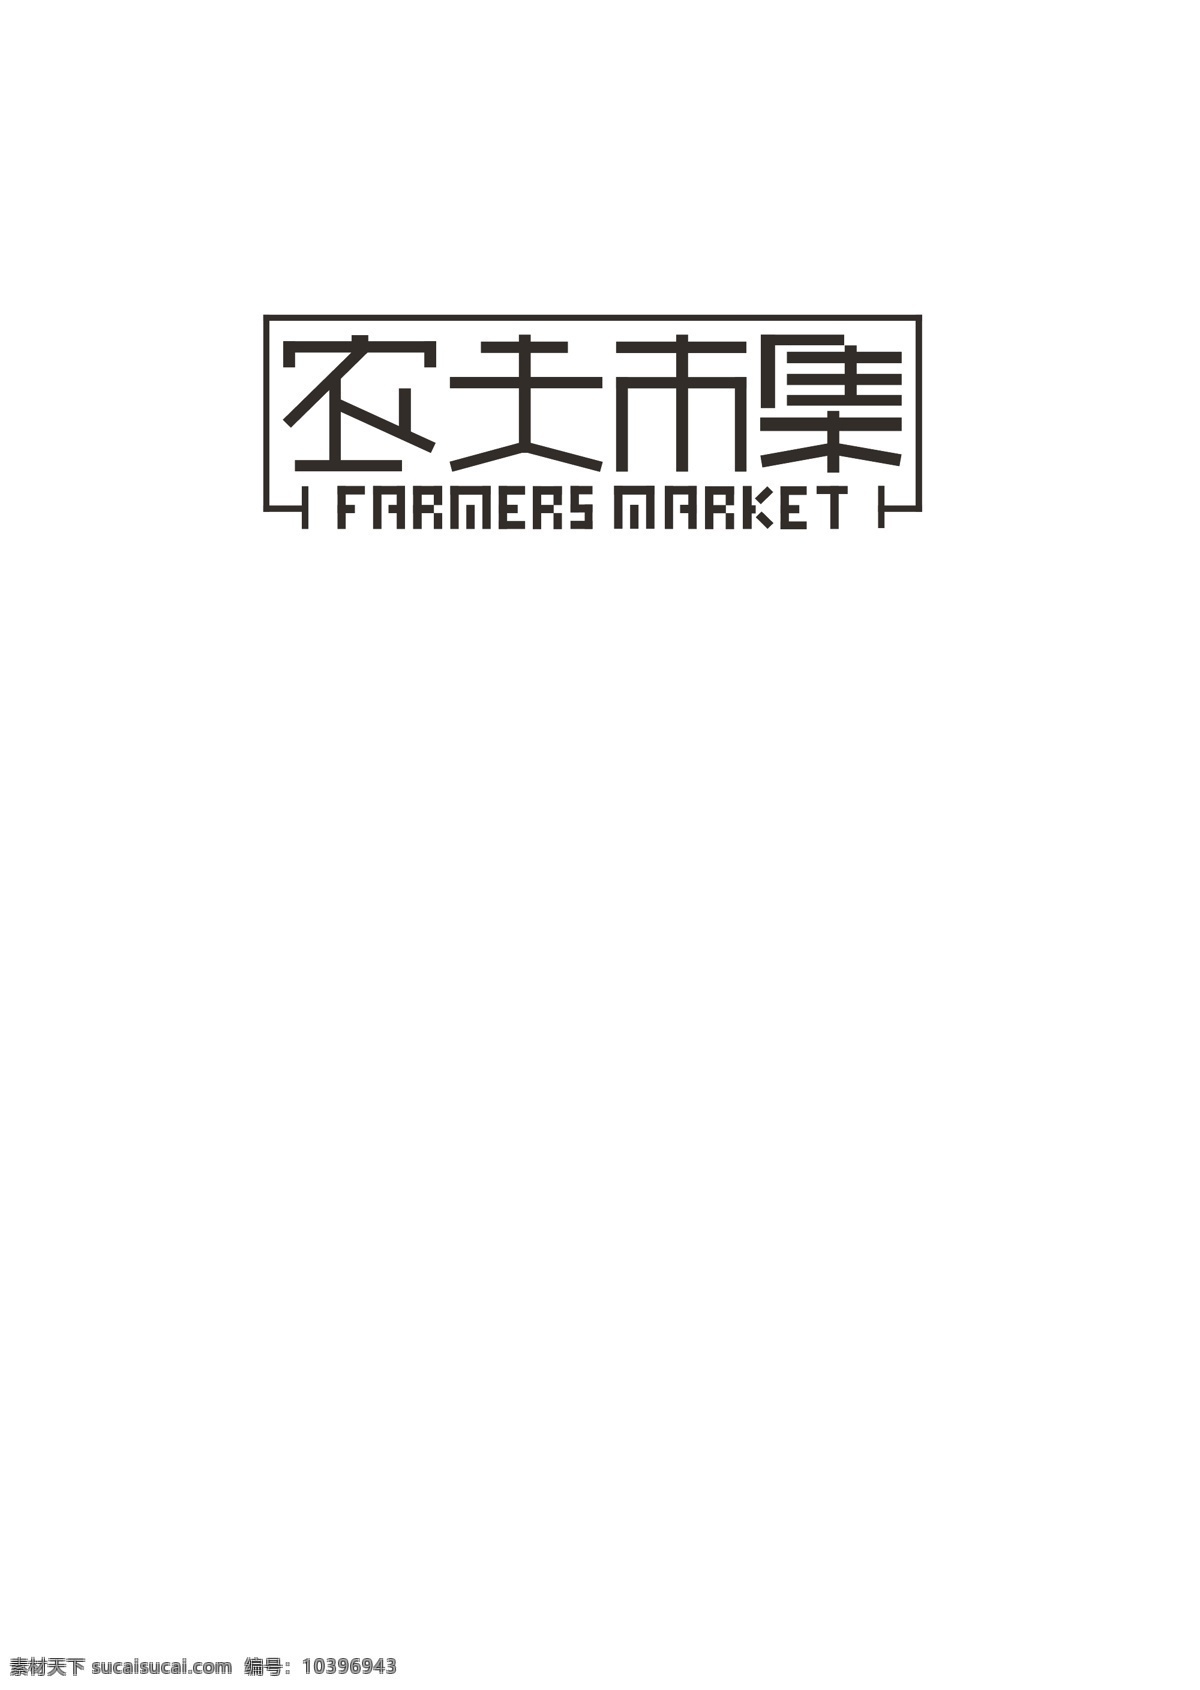 谷物标志 标志 谷物logo 粮食 标志设计 农夫市集 原创 白色